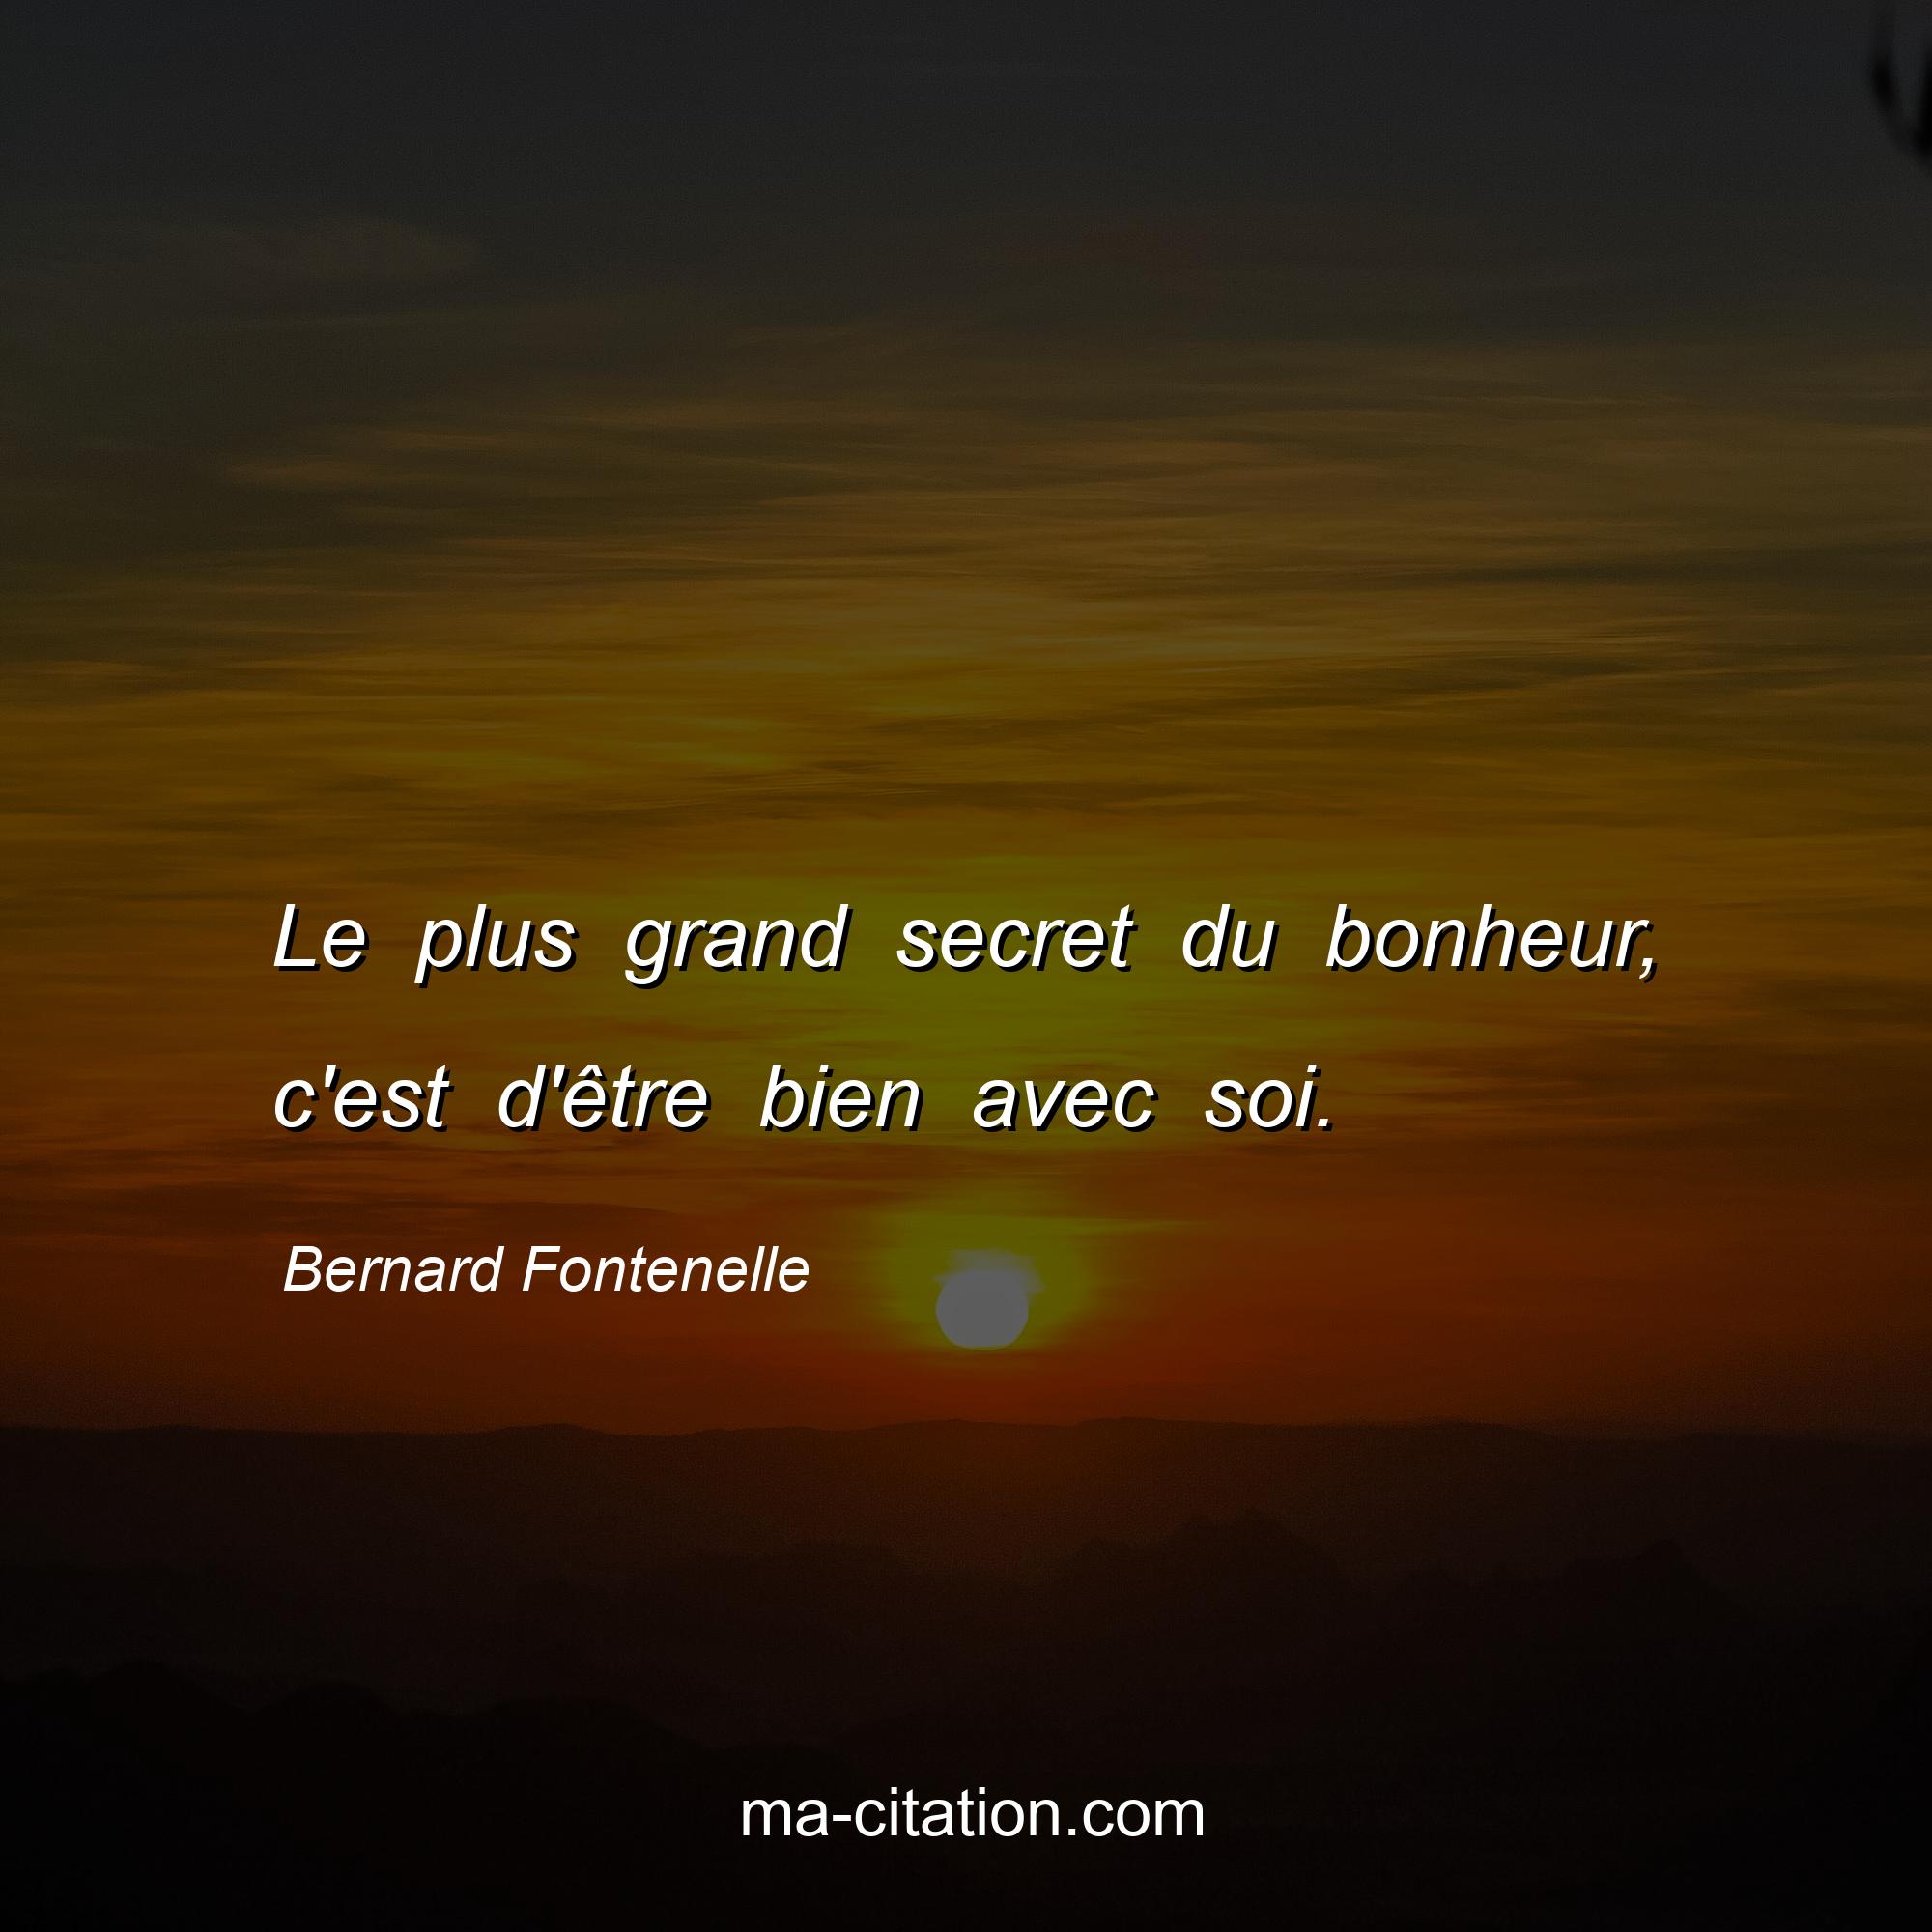 Bernard Fontenelle : Le plus grand secret du bonheur, c'est d'être bien avec soi.